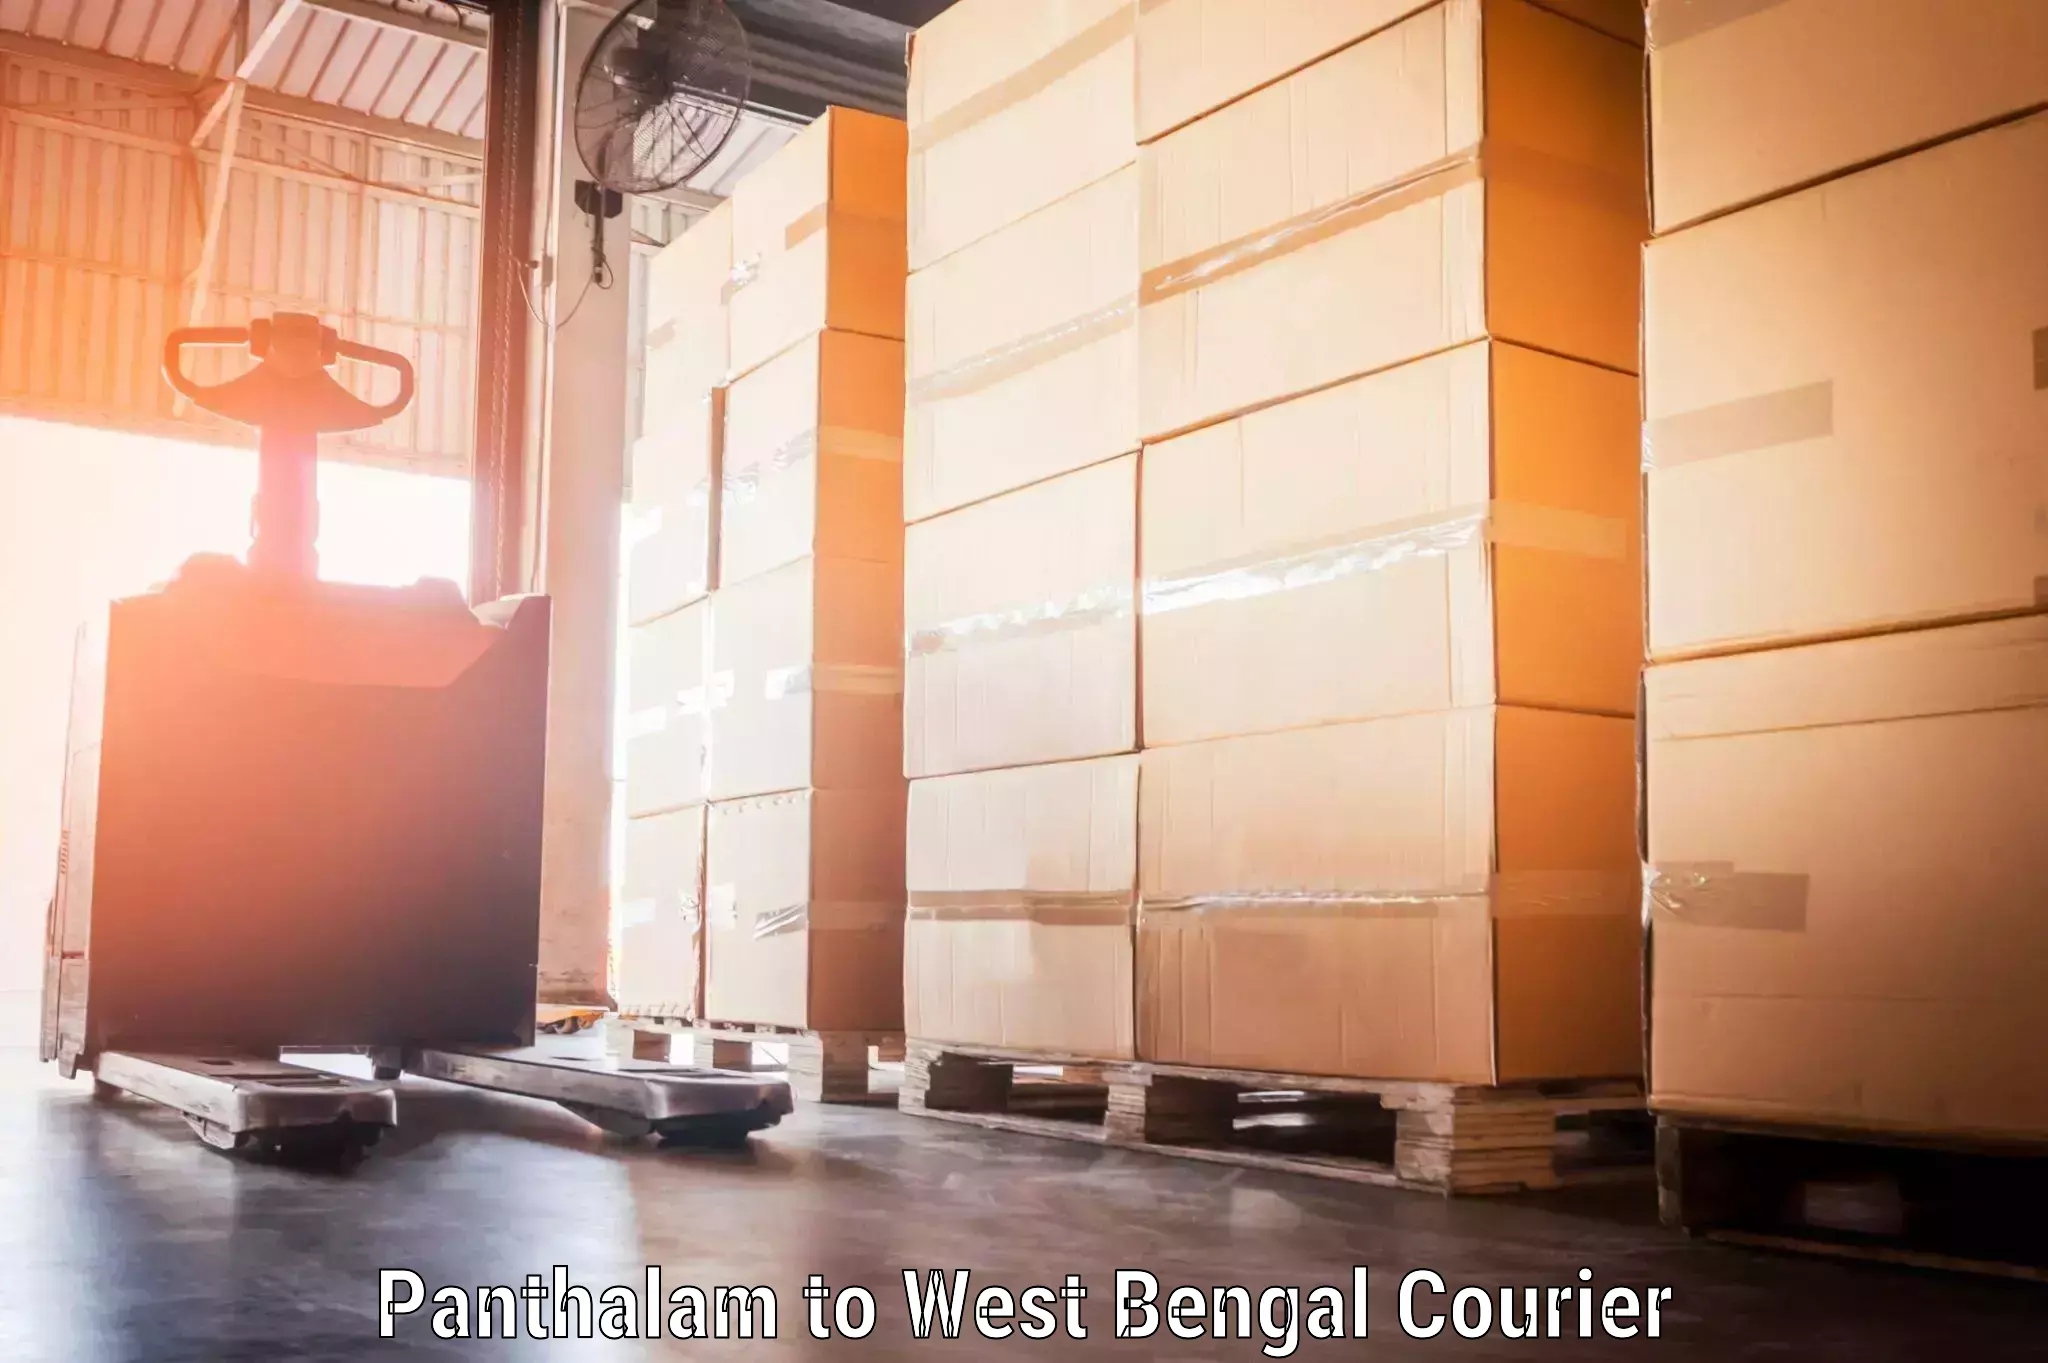 Baggage transport scheduler Panthalam to Kolkata Port